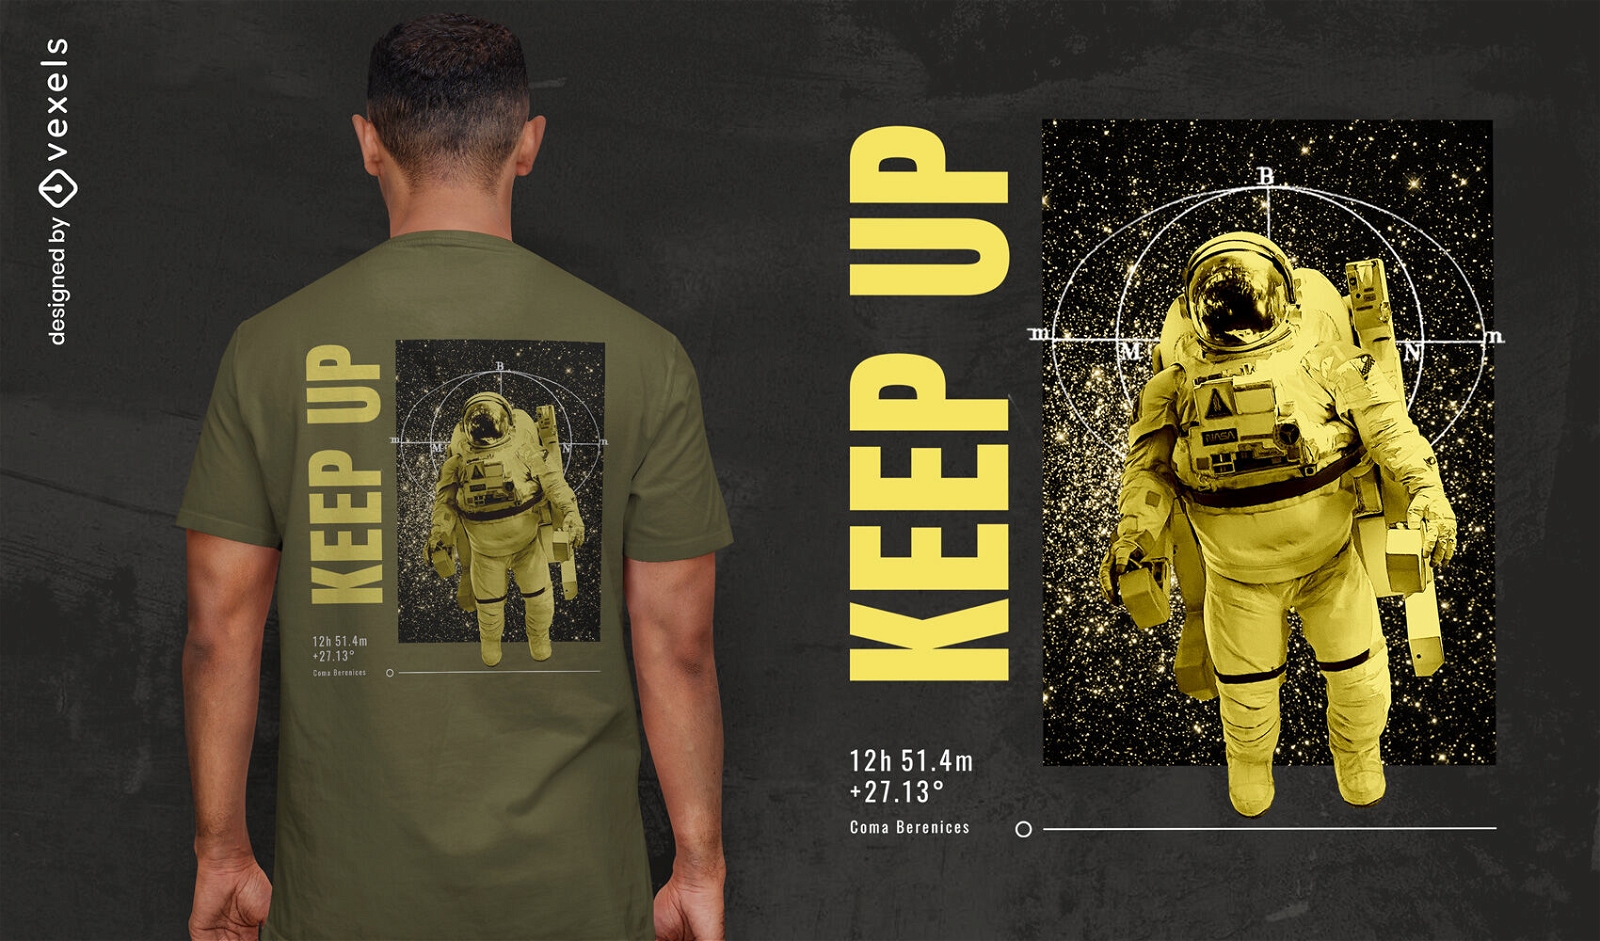 Diseño de camiseta de astronauta flotando en el espacio.